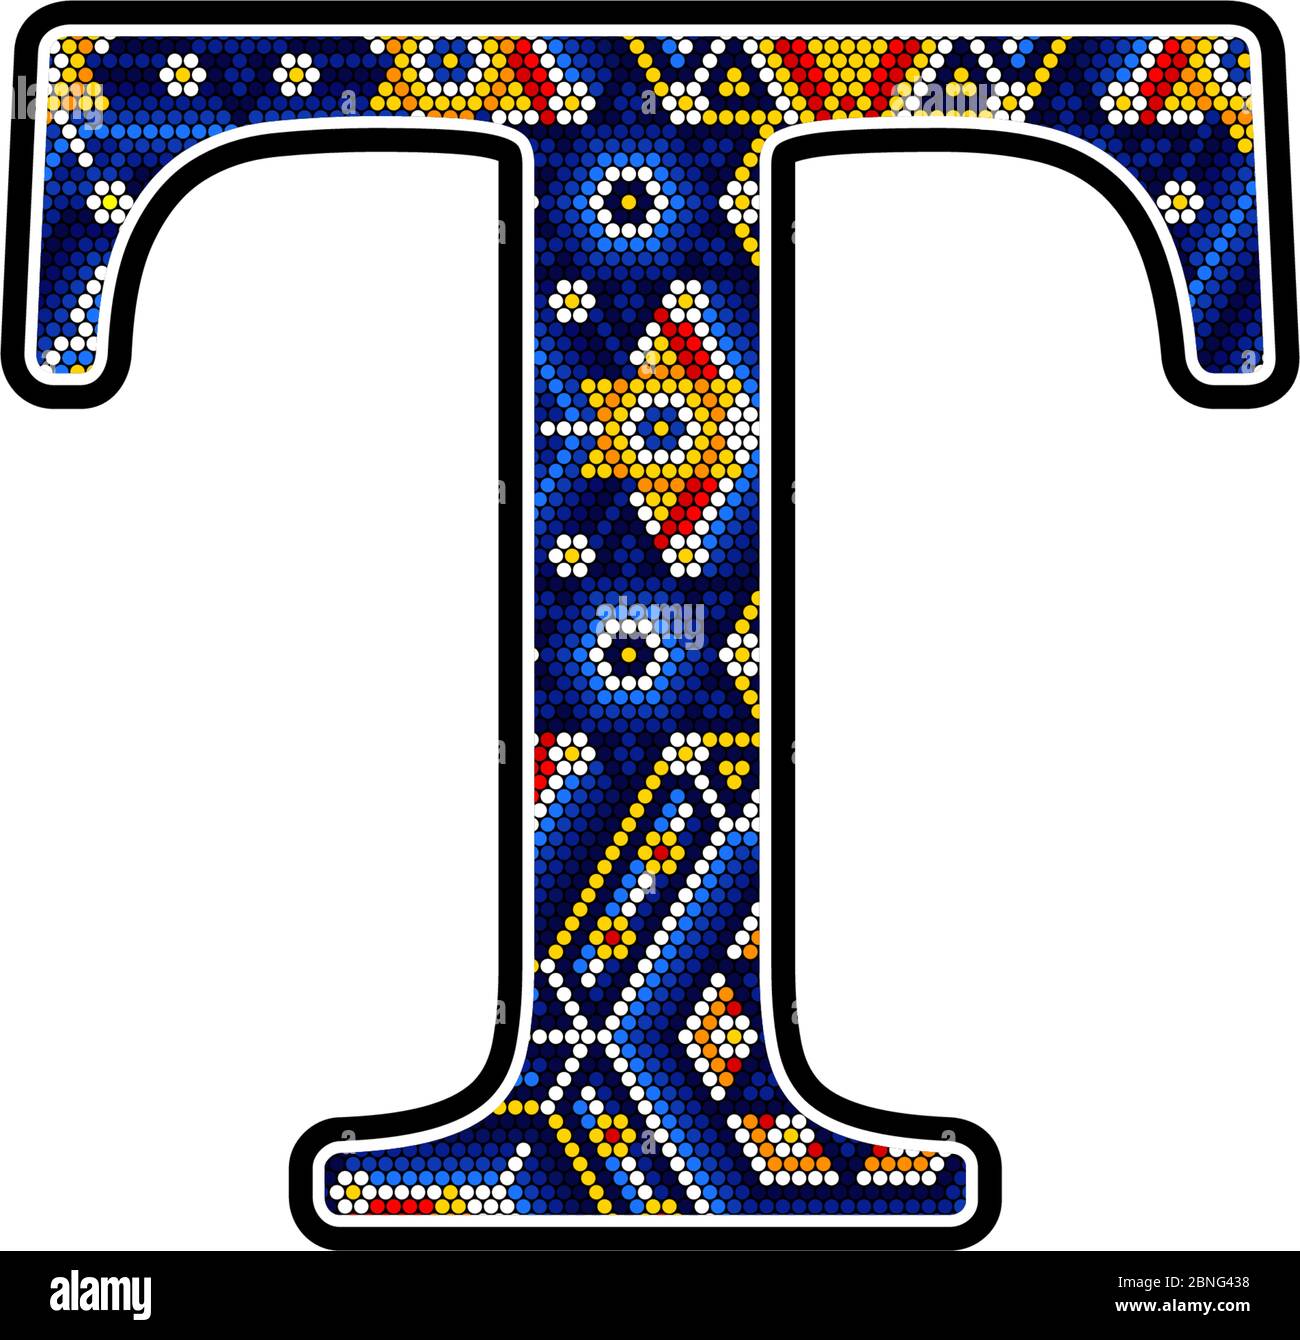 Lettre T majuscule initiale avec points colorés. Design abstrait inspiré du style artisanal mexicain du huichol. Isolé sur fond blanc Illustration de Vecteur